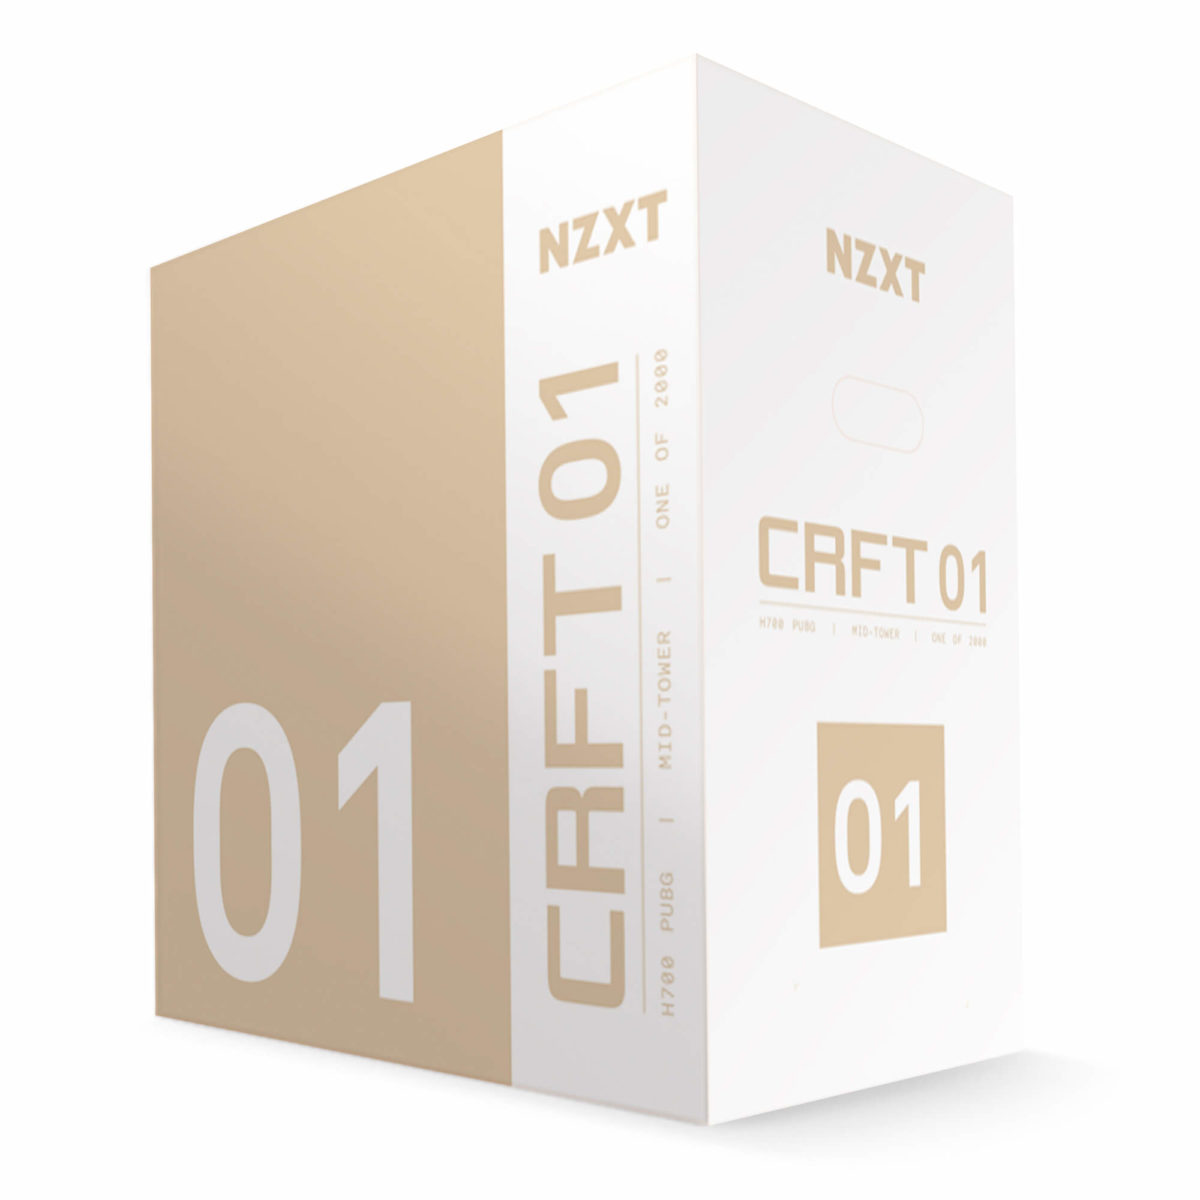 NZXT presenta CRFT, su linea de productos gaming personalizados